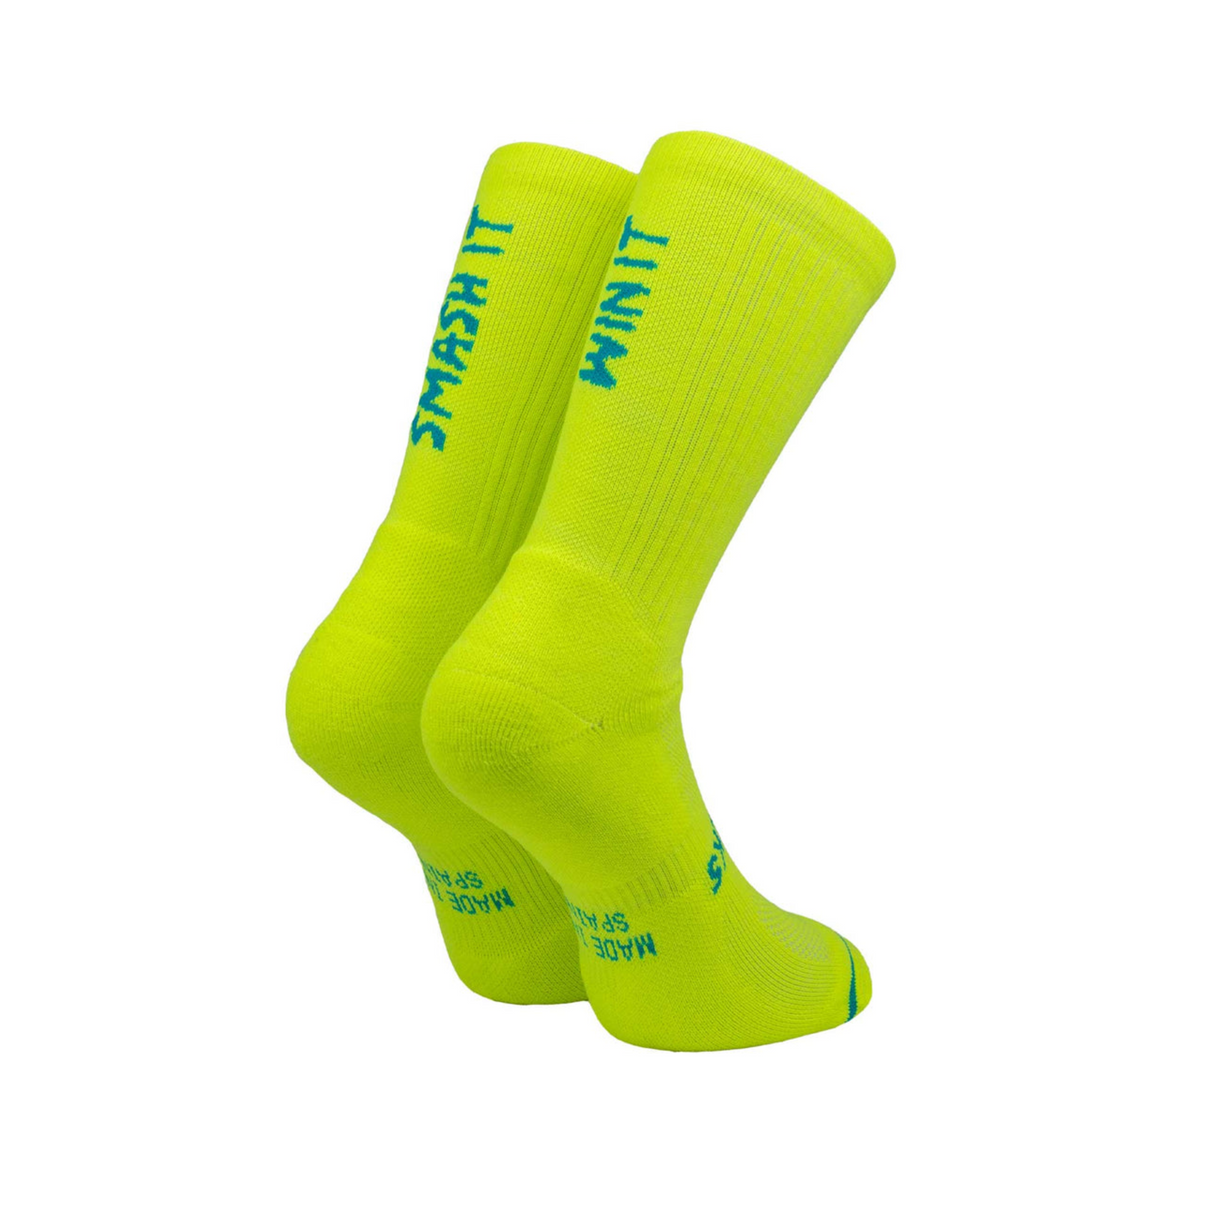 Sporcks Smash It Yellow Tennis/ Padel Socks